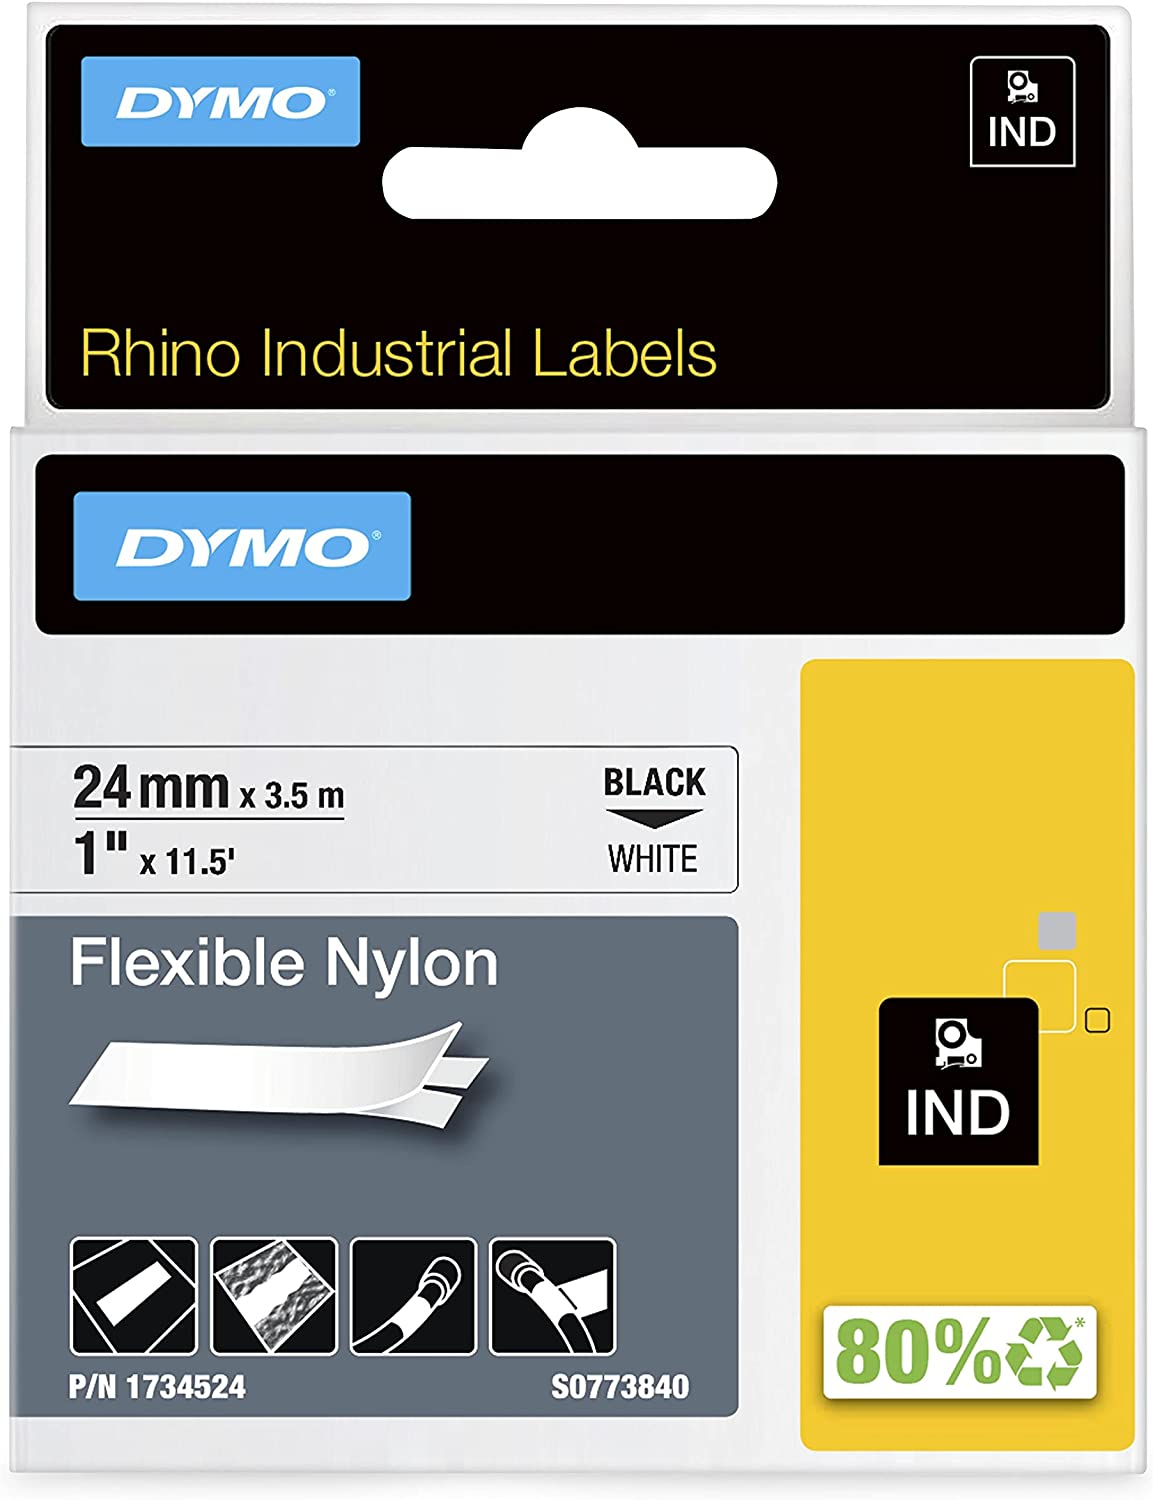 DYMO Industrial Labels, 1", Flex Nylon, Black on White, 1734524 Black on White 1" (24MM)